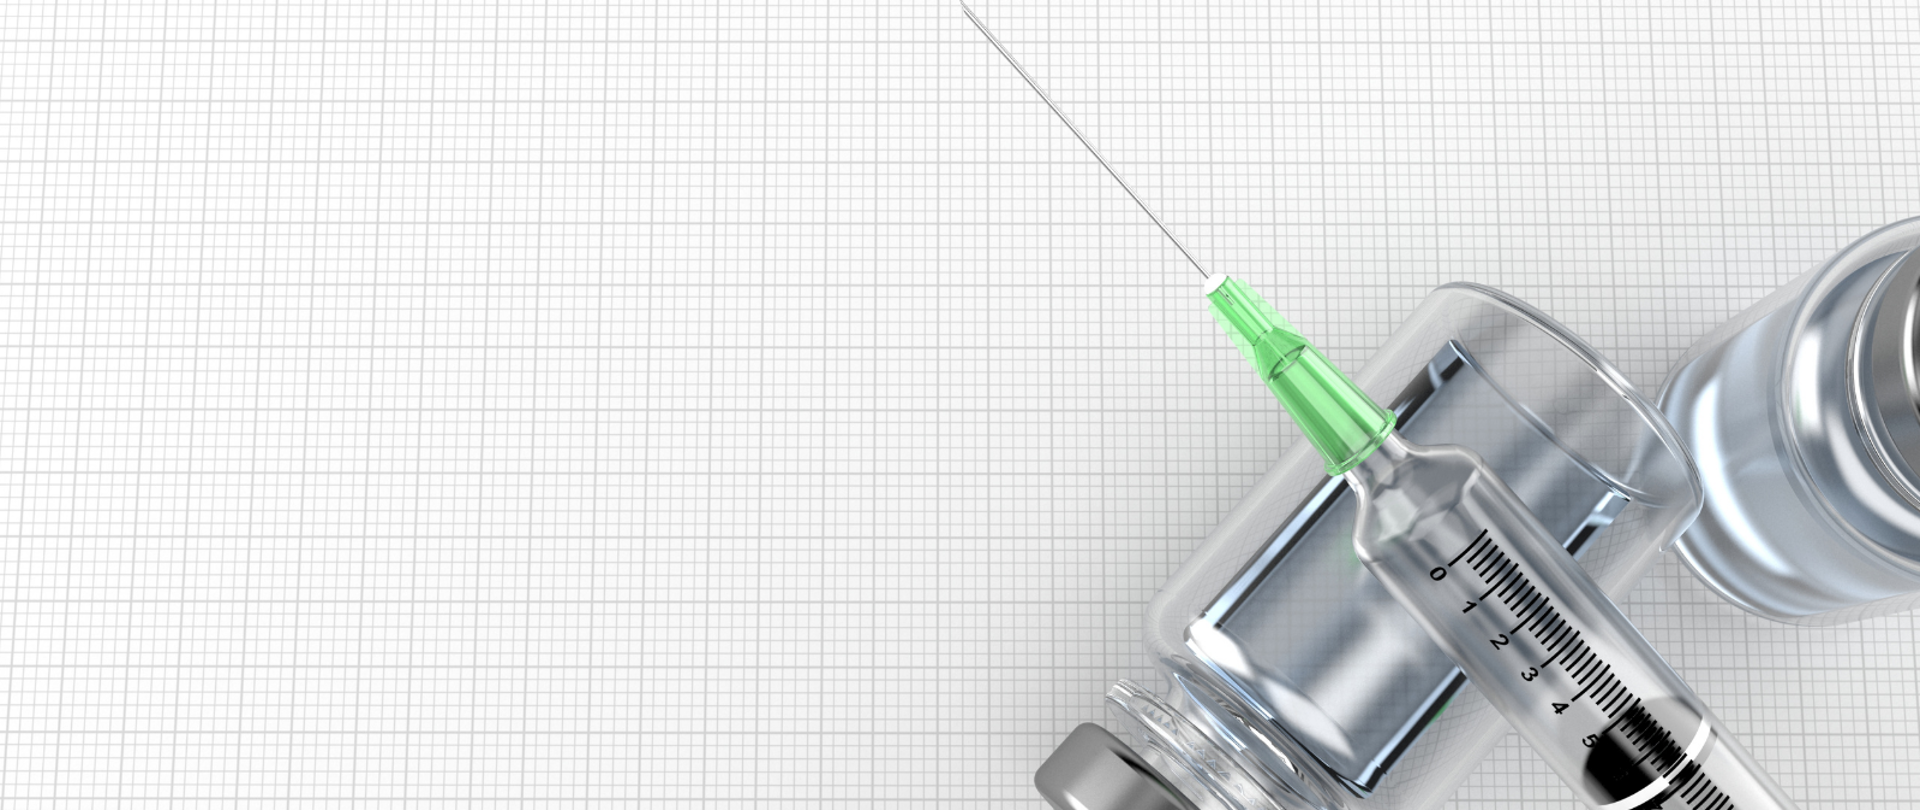 Dwie fiolki szczepionki, na których leży igła ze strzykawką. Materiały położone na kartce w kratkę